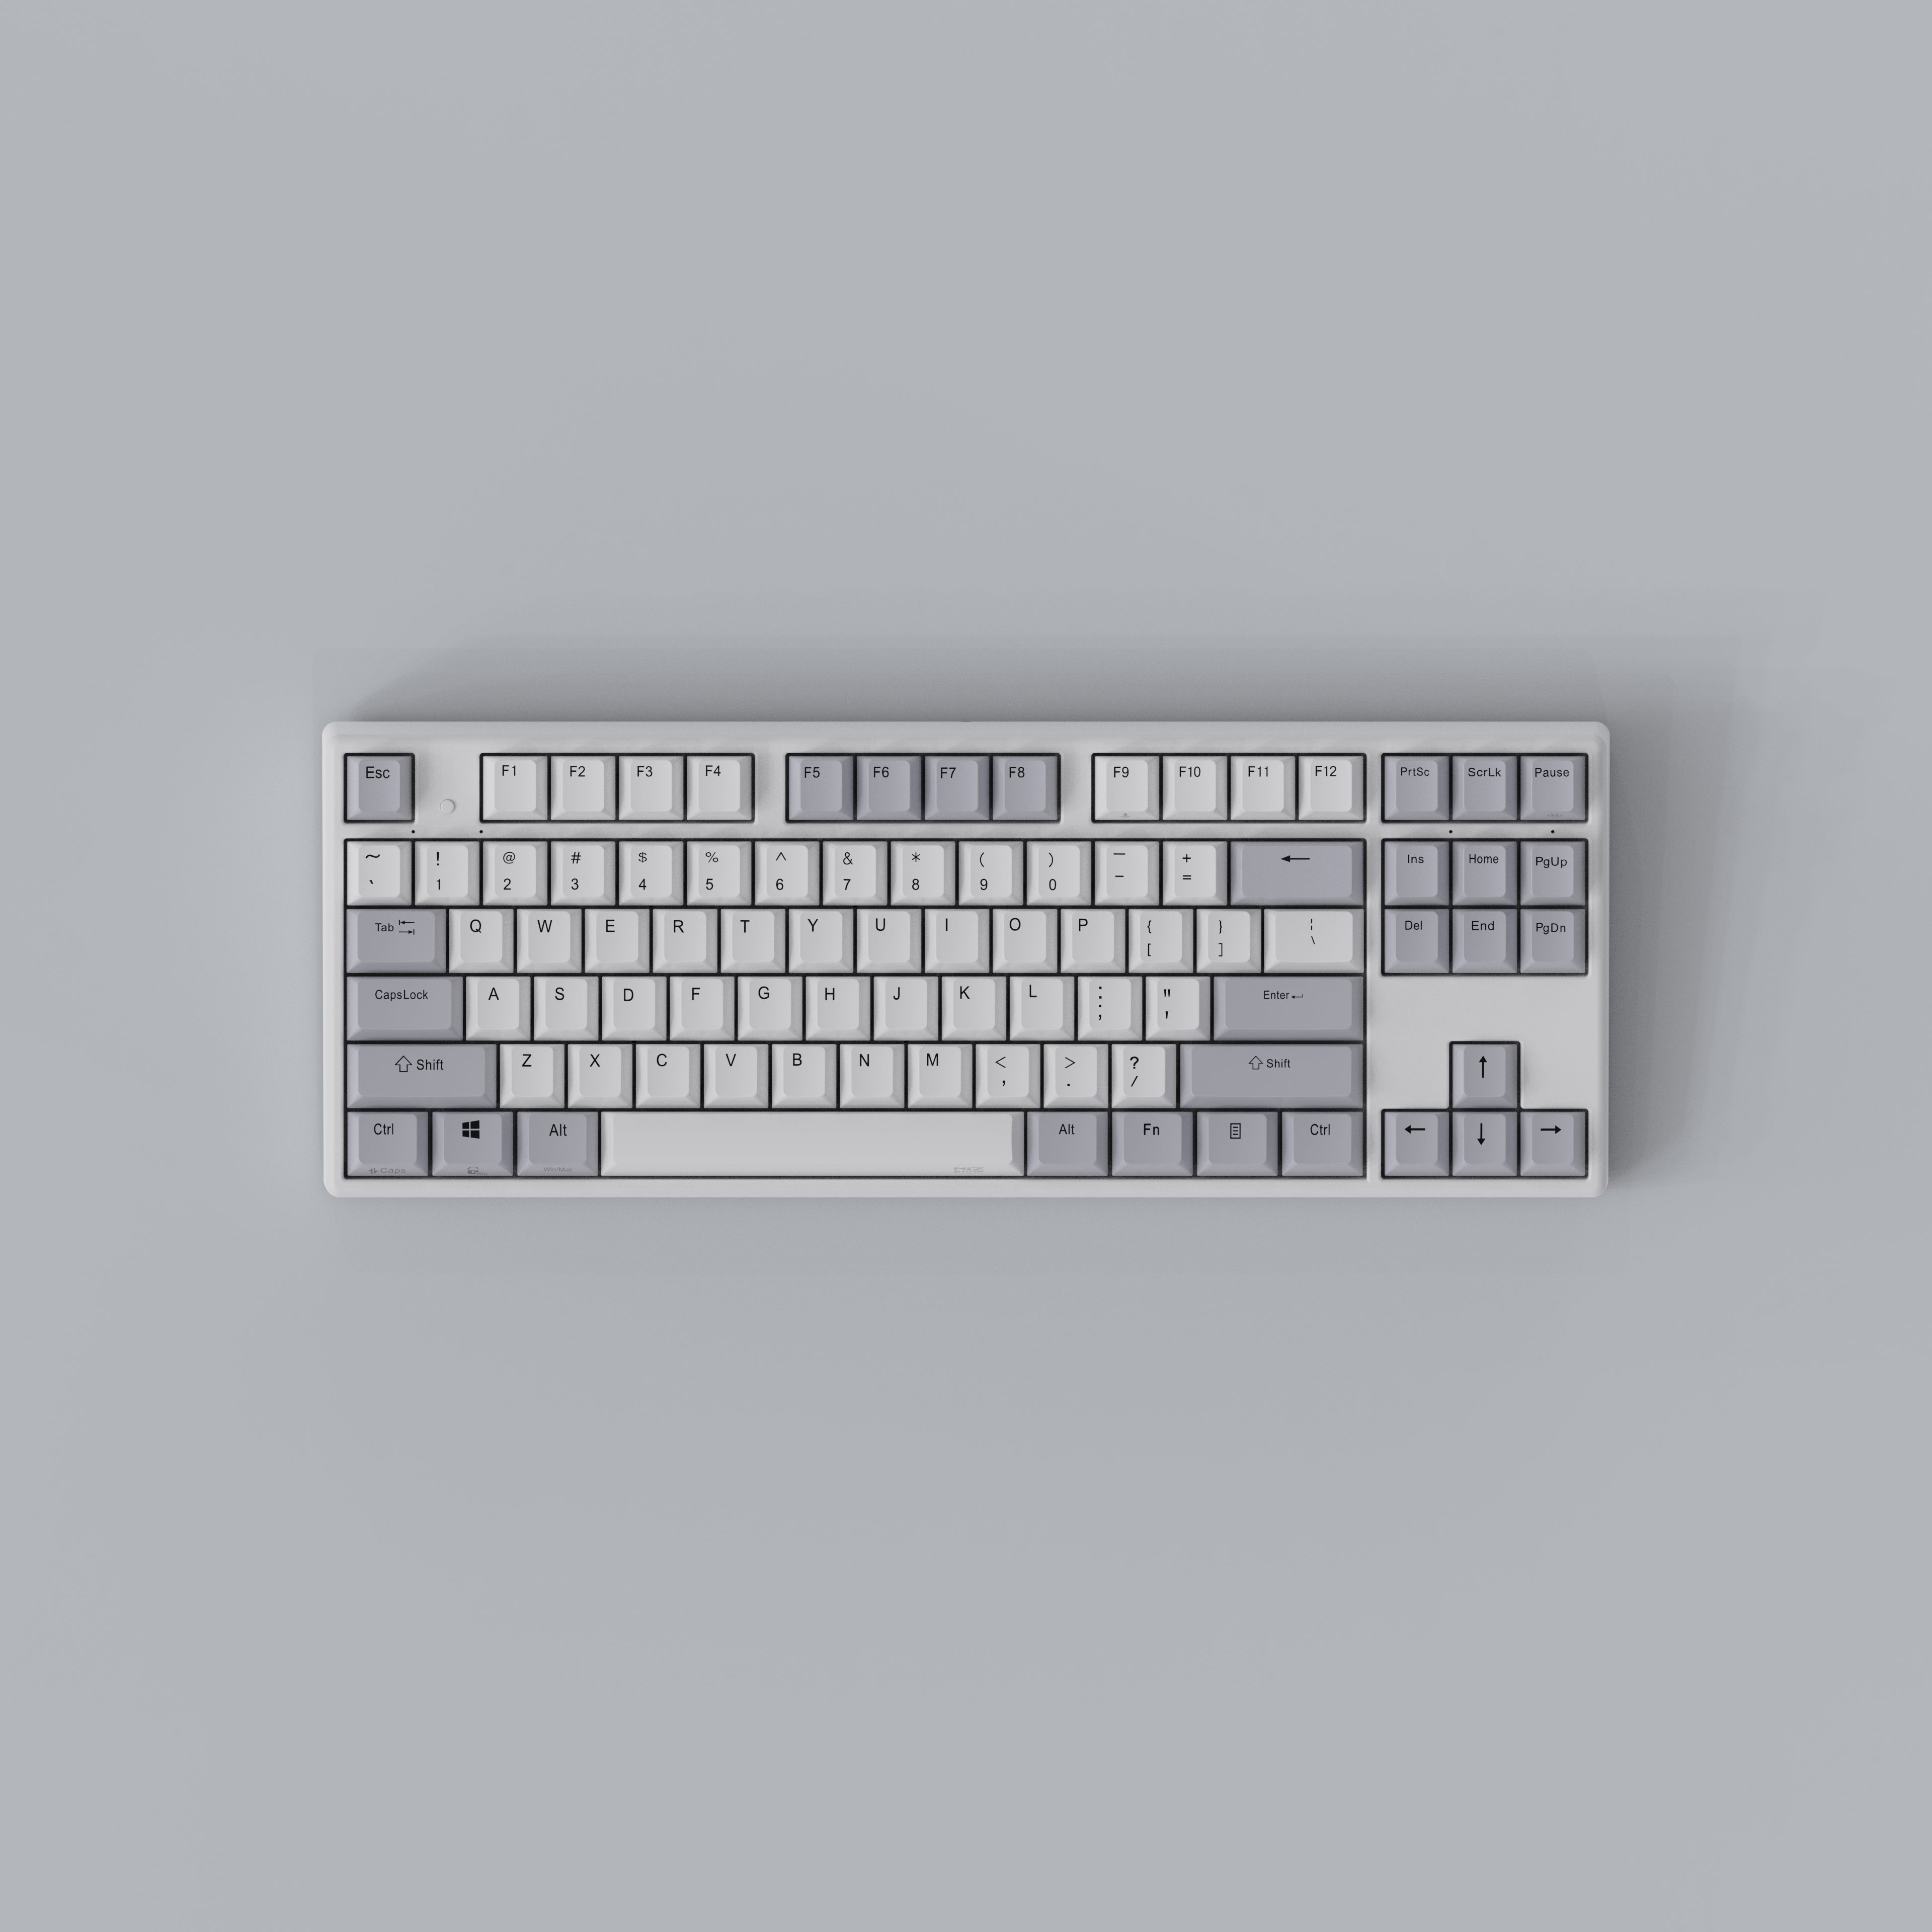 NIZ Keyboard 87/108 IP68 Waterproof Series White Capacitive Keyboard